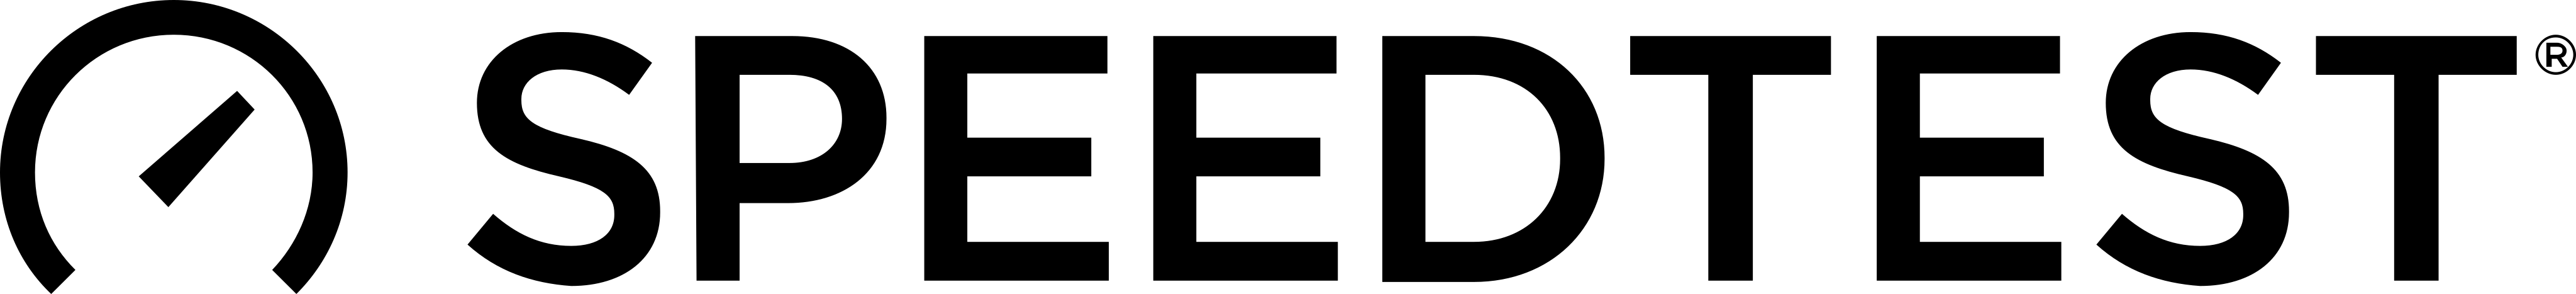 speedtest logo - Speedtest Logo